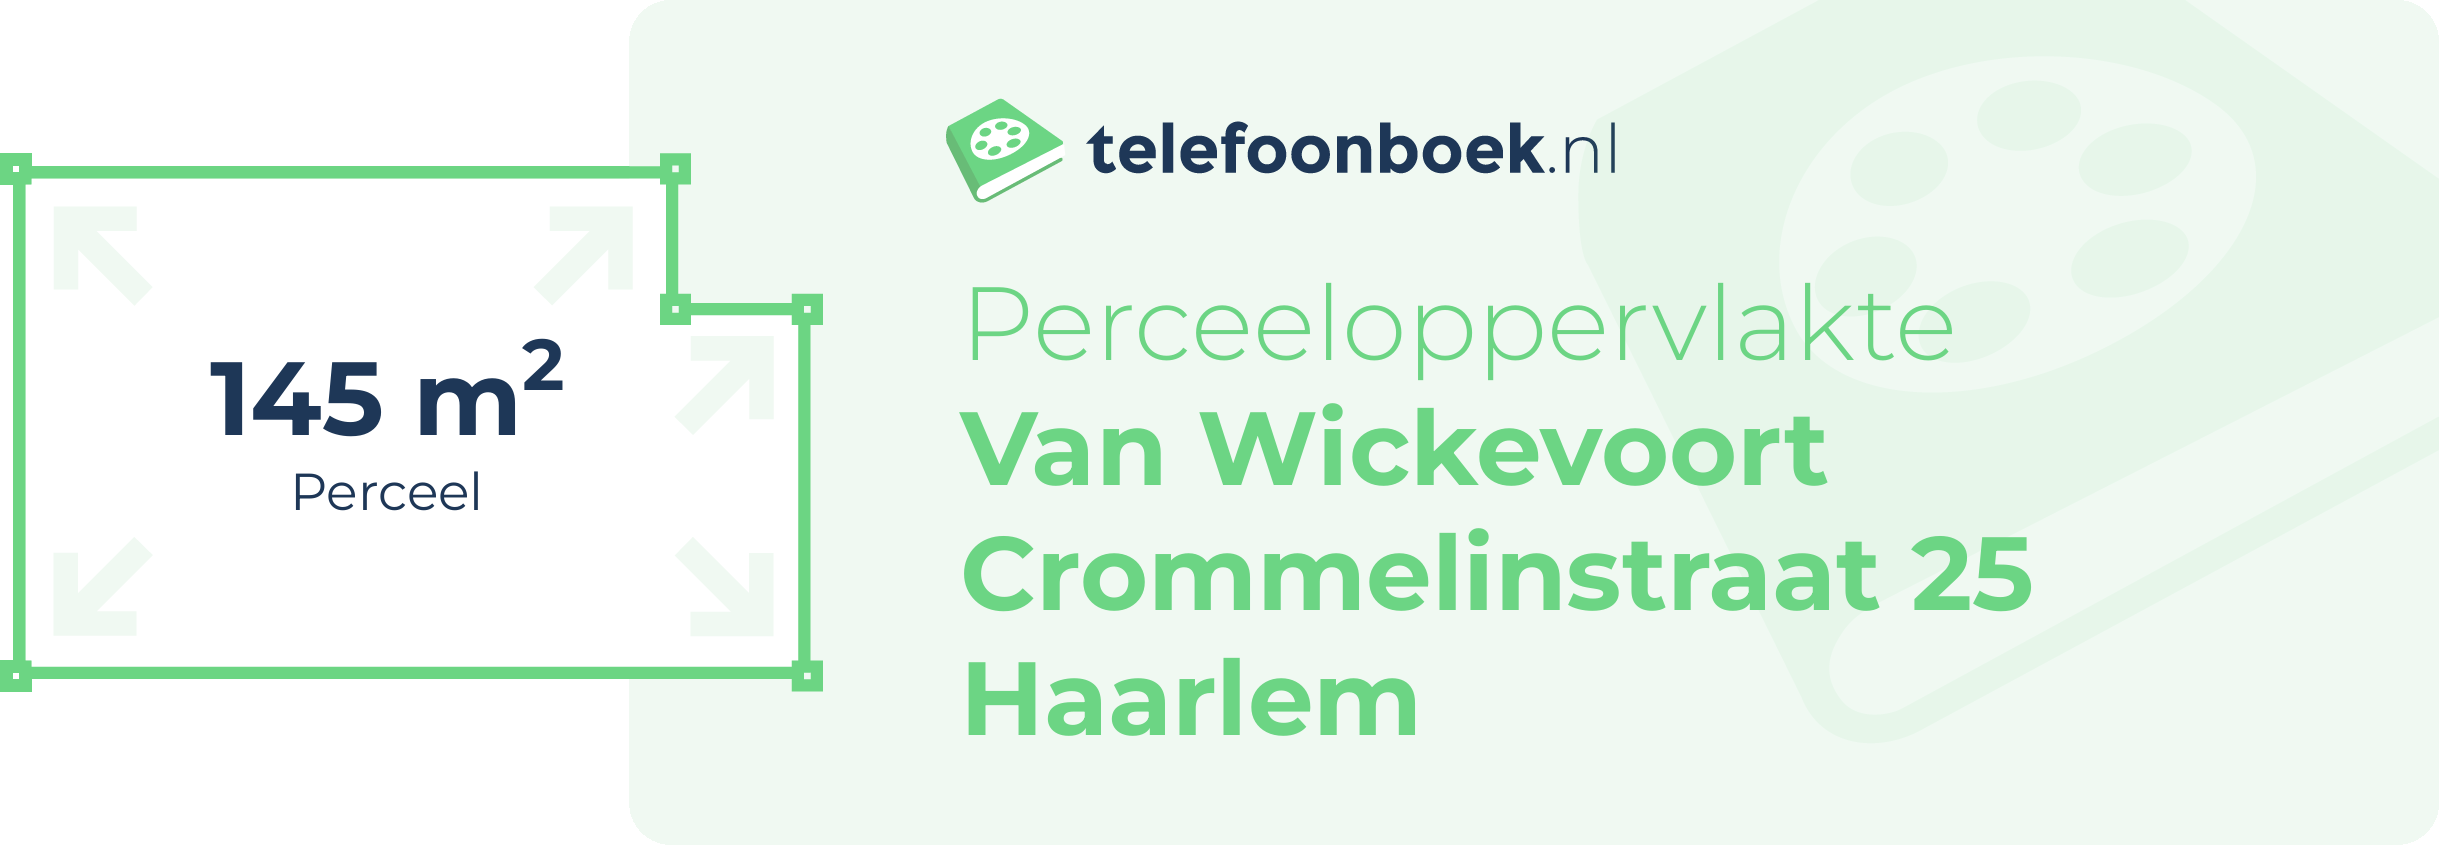 Perceeloppervlakte Van Wickevoort Crommelinstraat 25 Haarlem